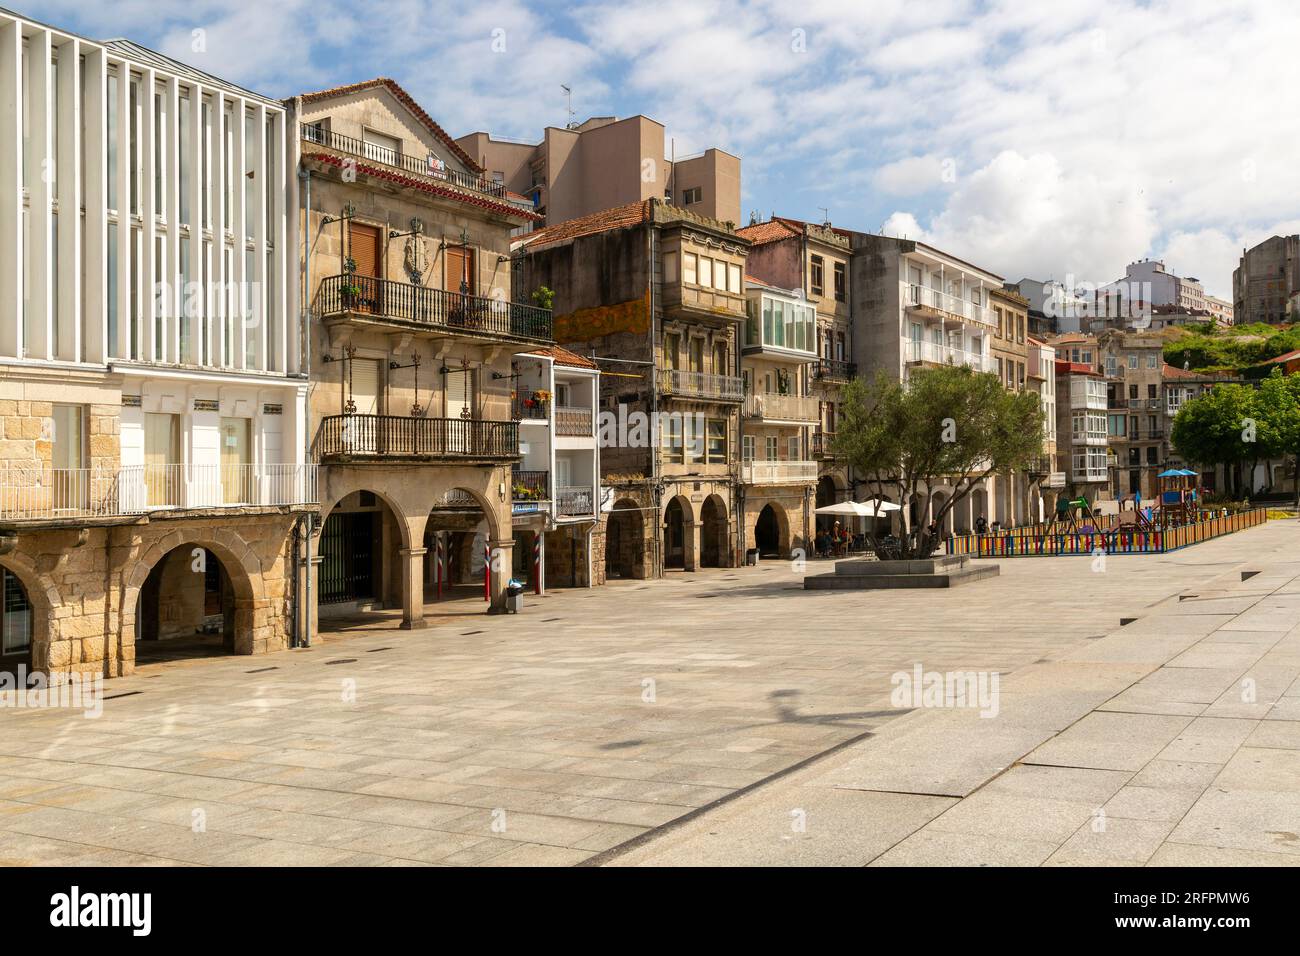 Historical buildings in old town, Praza do Berbés, Casco Vello, city of Vigo, Galicia, Spain Stock Photo